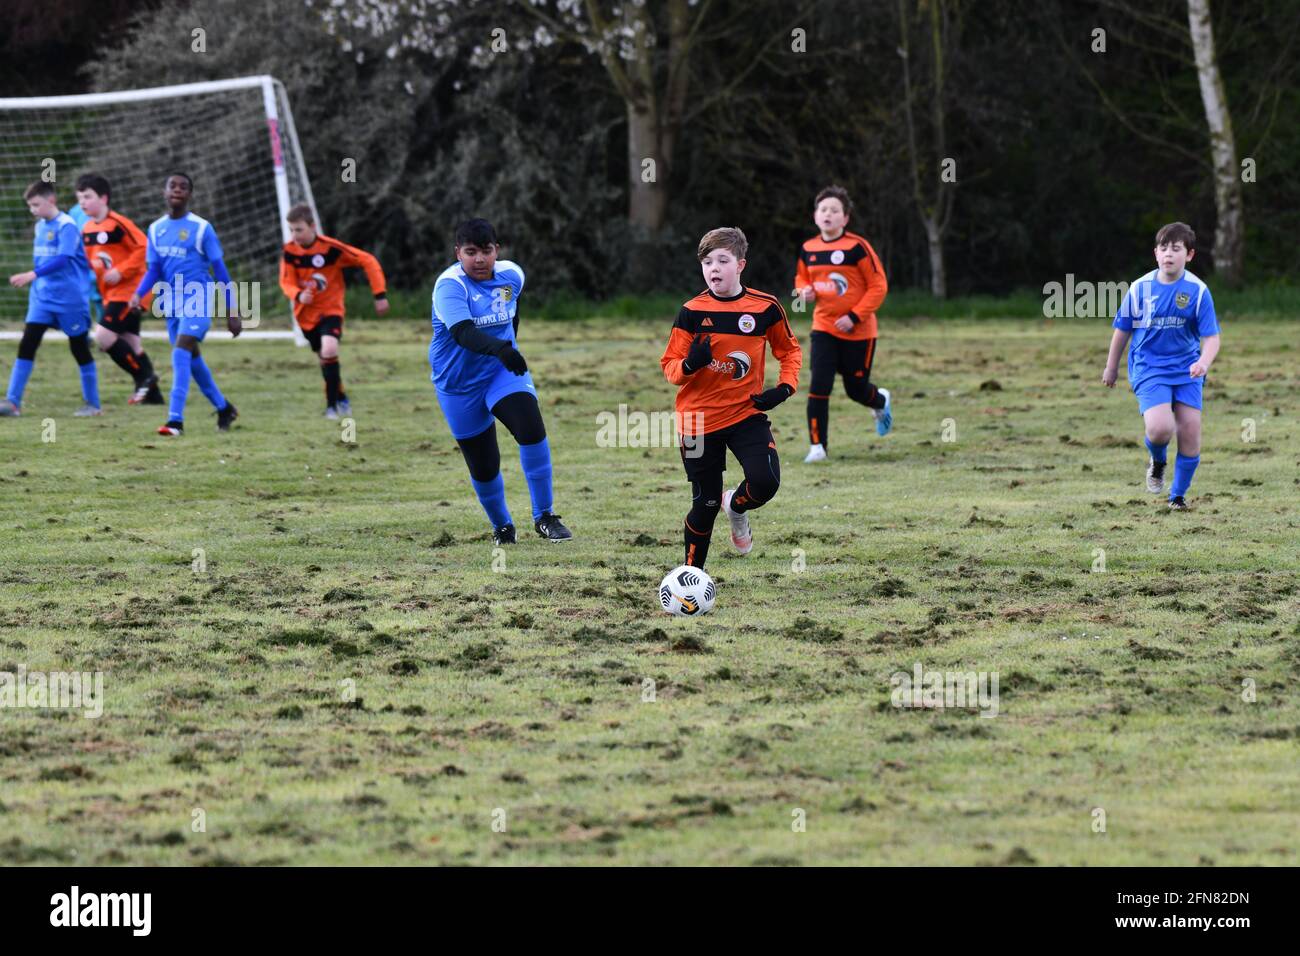 Juniorfußballspiel-Action für Jungen auf unebenem Spielfeld Großbritannien Stockfoto